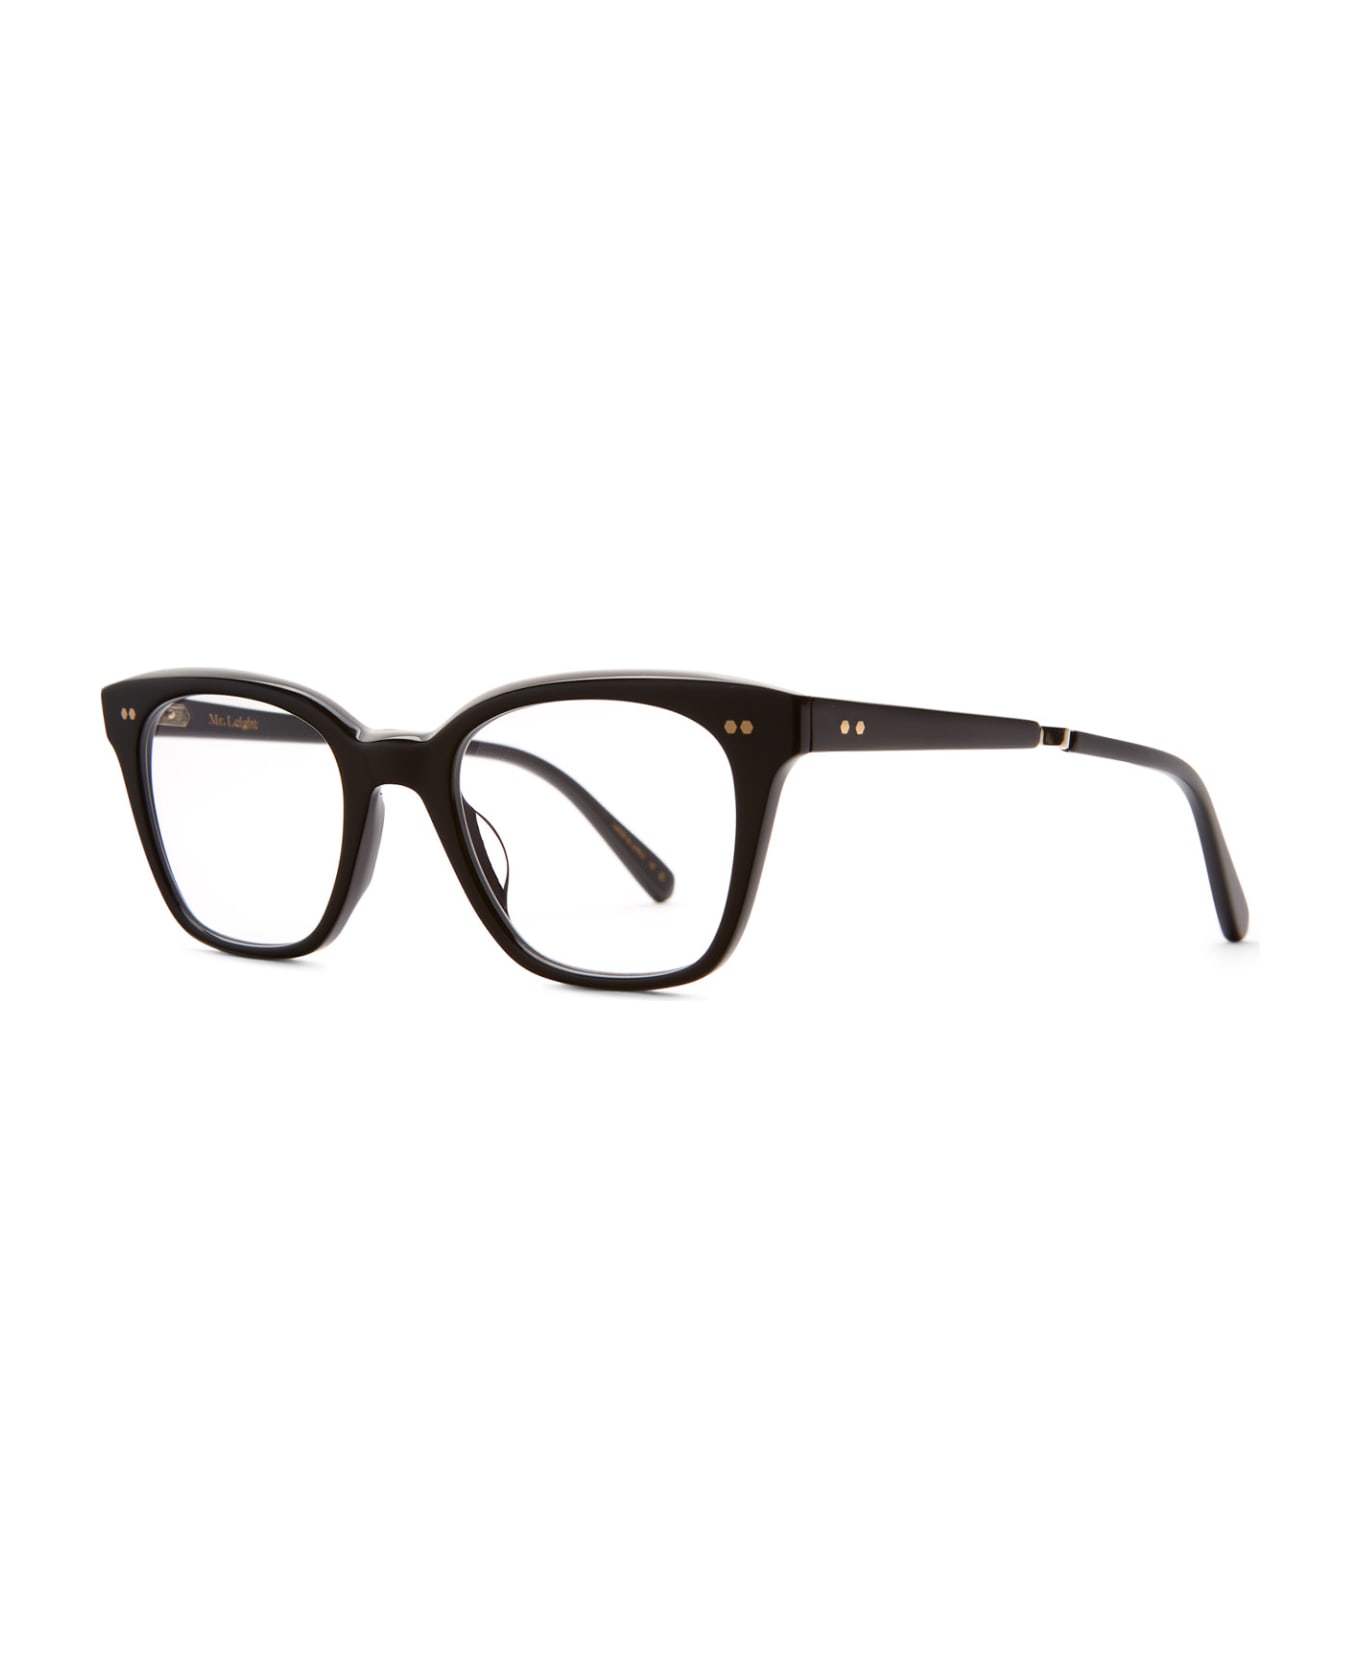 Mr. Leight Morgan C Black-12k White Gold Glasses - Black-12K White Gold アイウェア